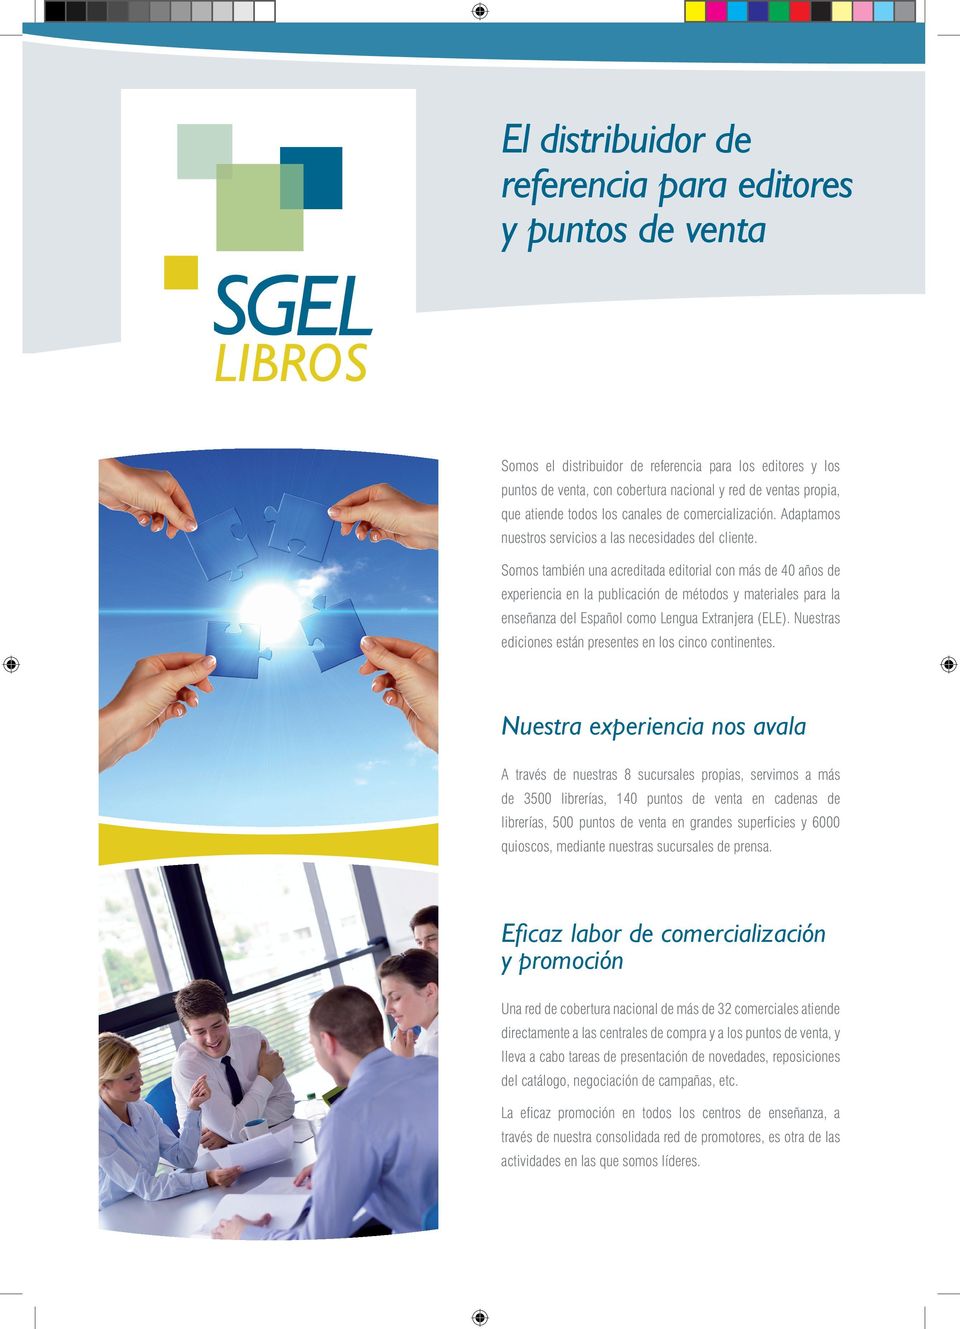 Somos también una acreditada editorial con más de 40 años de experiencia en la publicación de métodos y materiales para la enseñanza del Español como Lengua Extranjera (ELE).